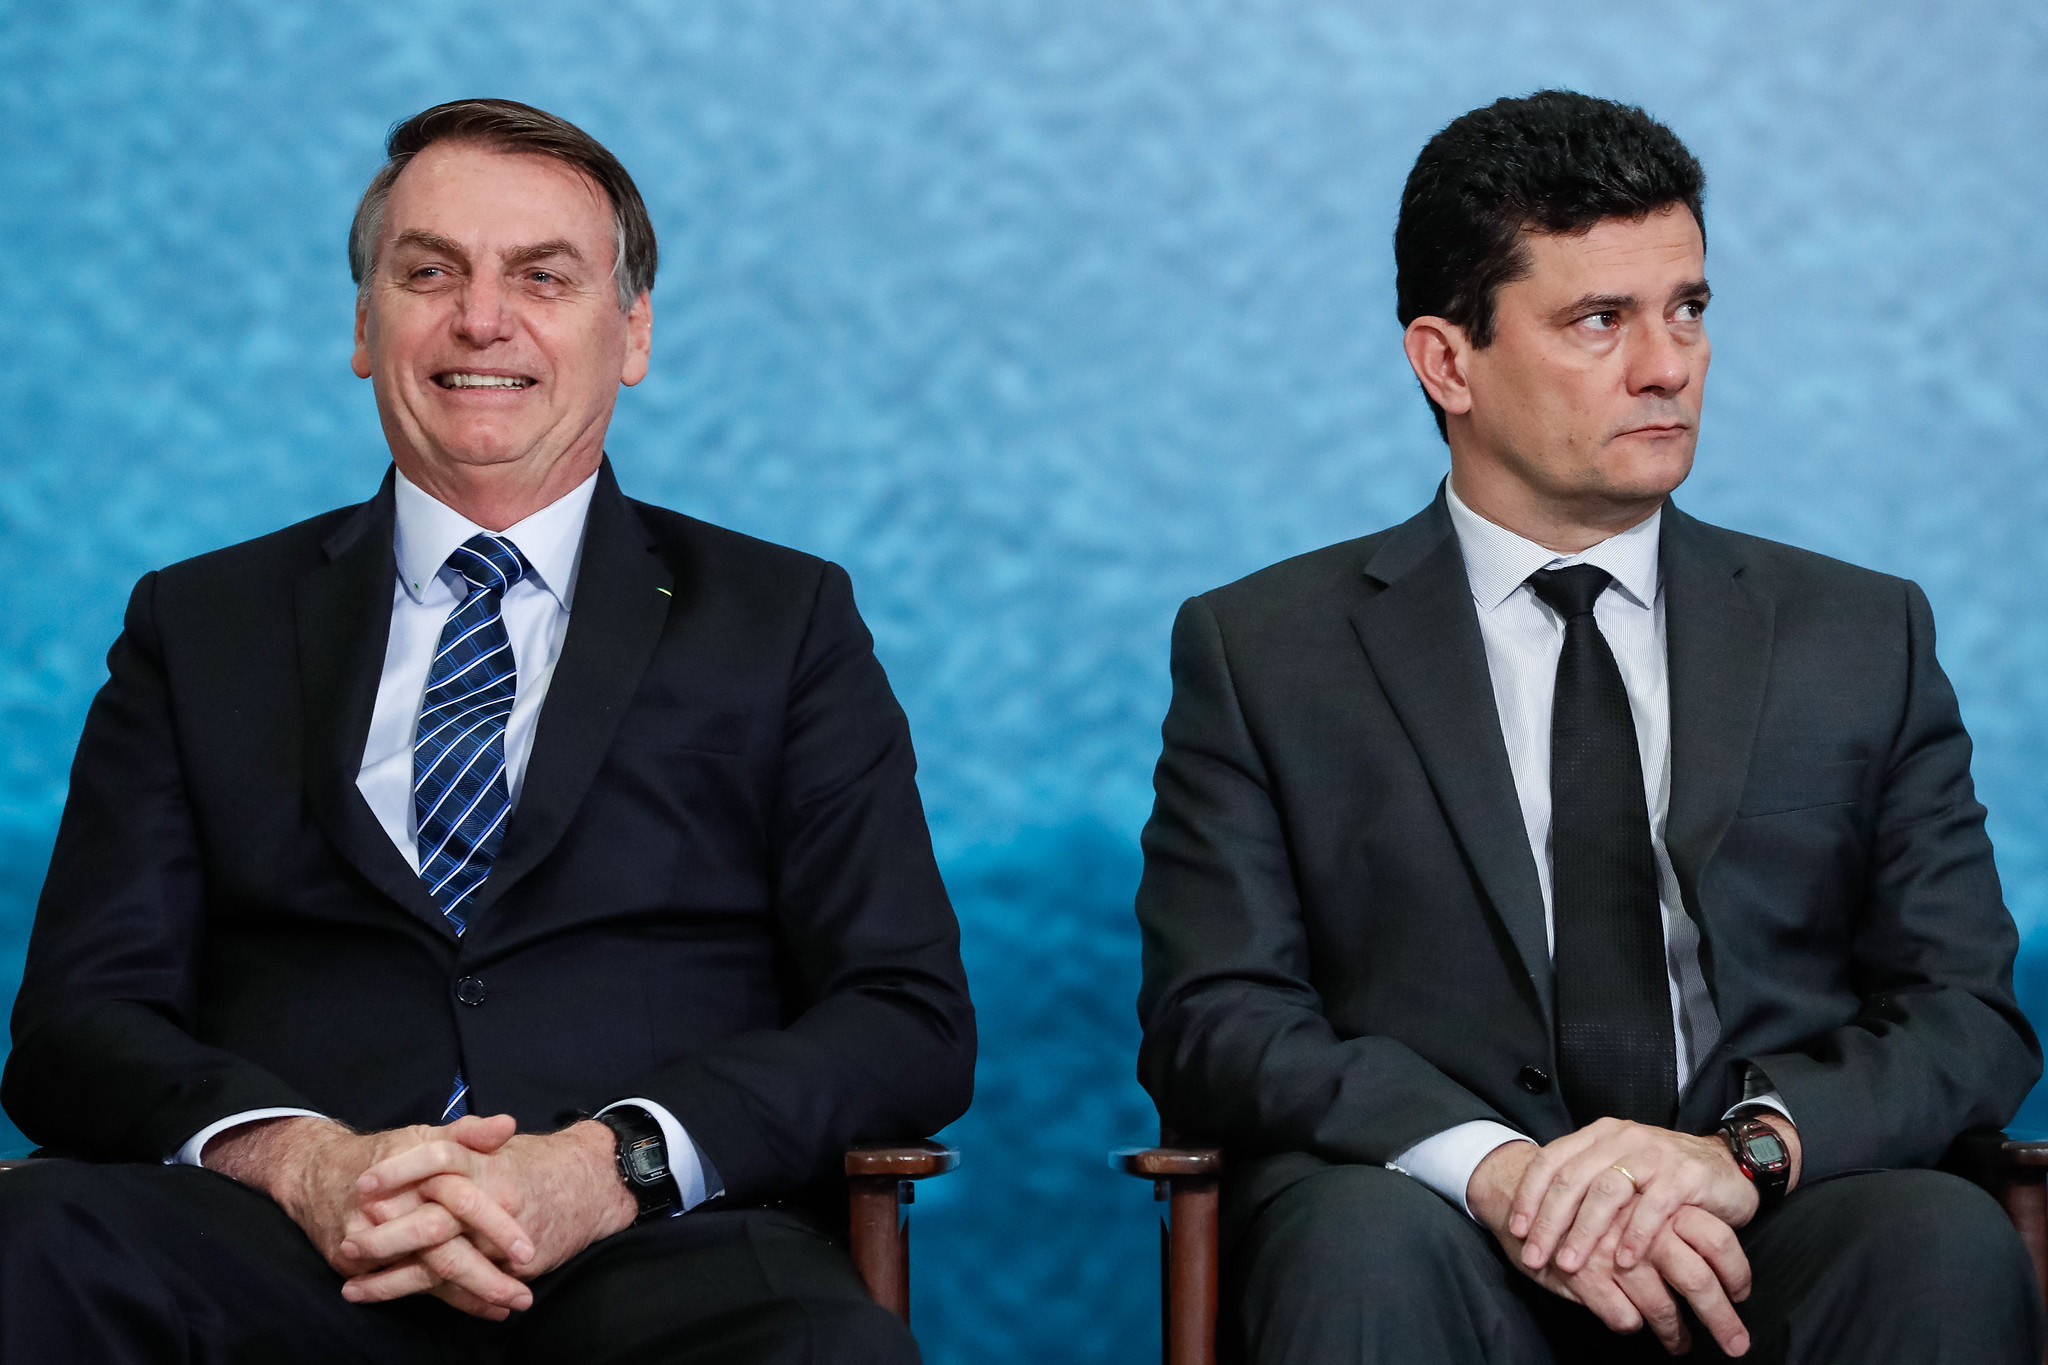 O presidente Jair Bolsonaro e o ministro Sérgio Moro (Justiça e Segurança Pública), em solenidade de Lançamento da Campanha do Projeto Anticrime. (Foto: Alan Santos/PR)